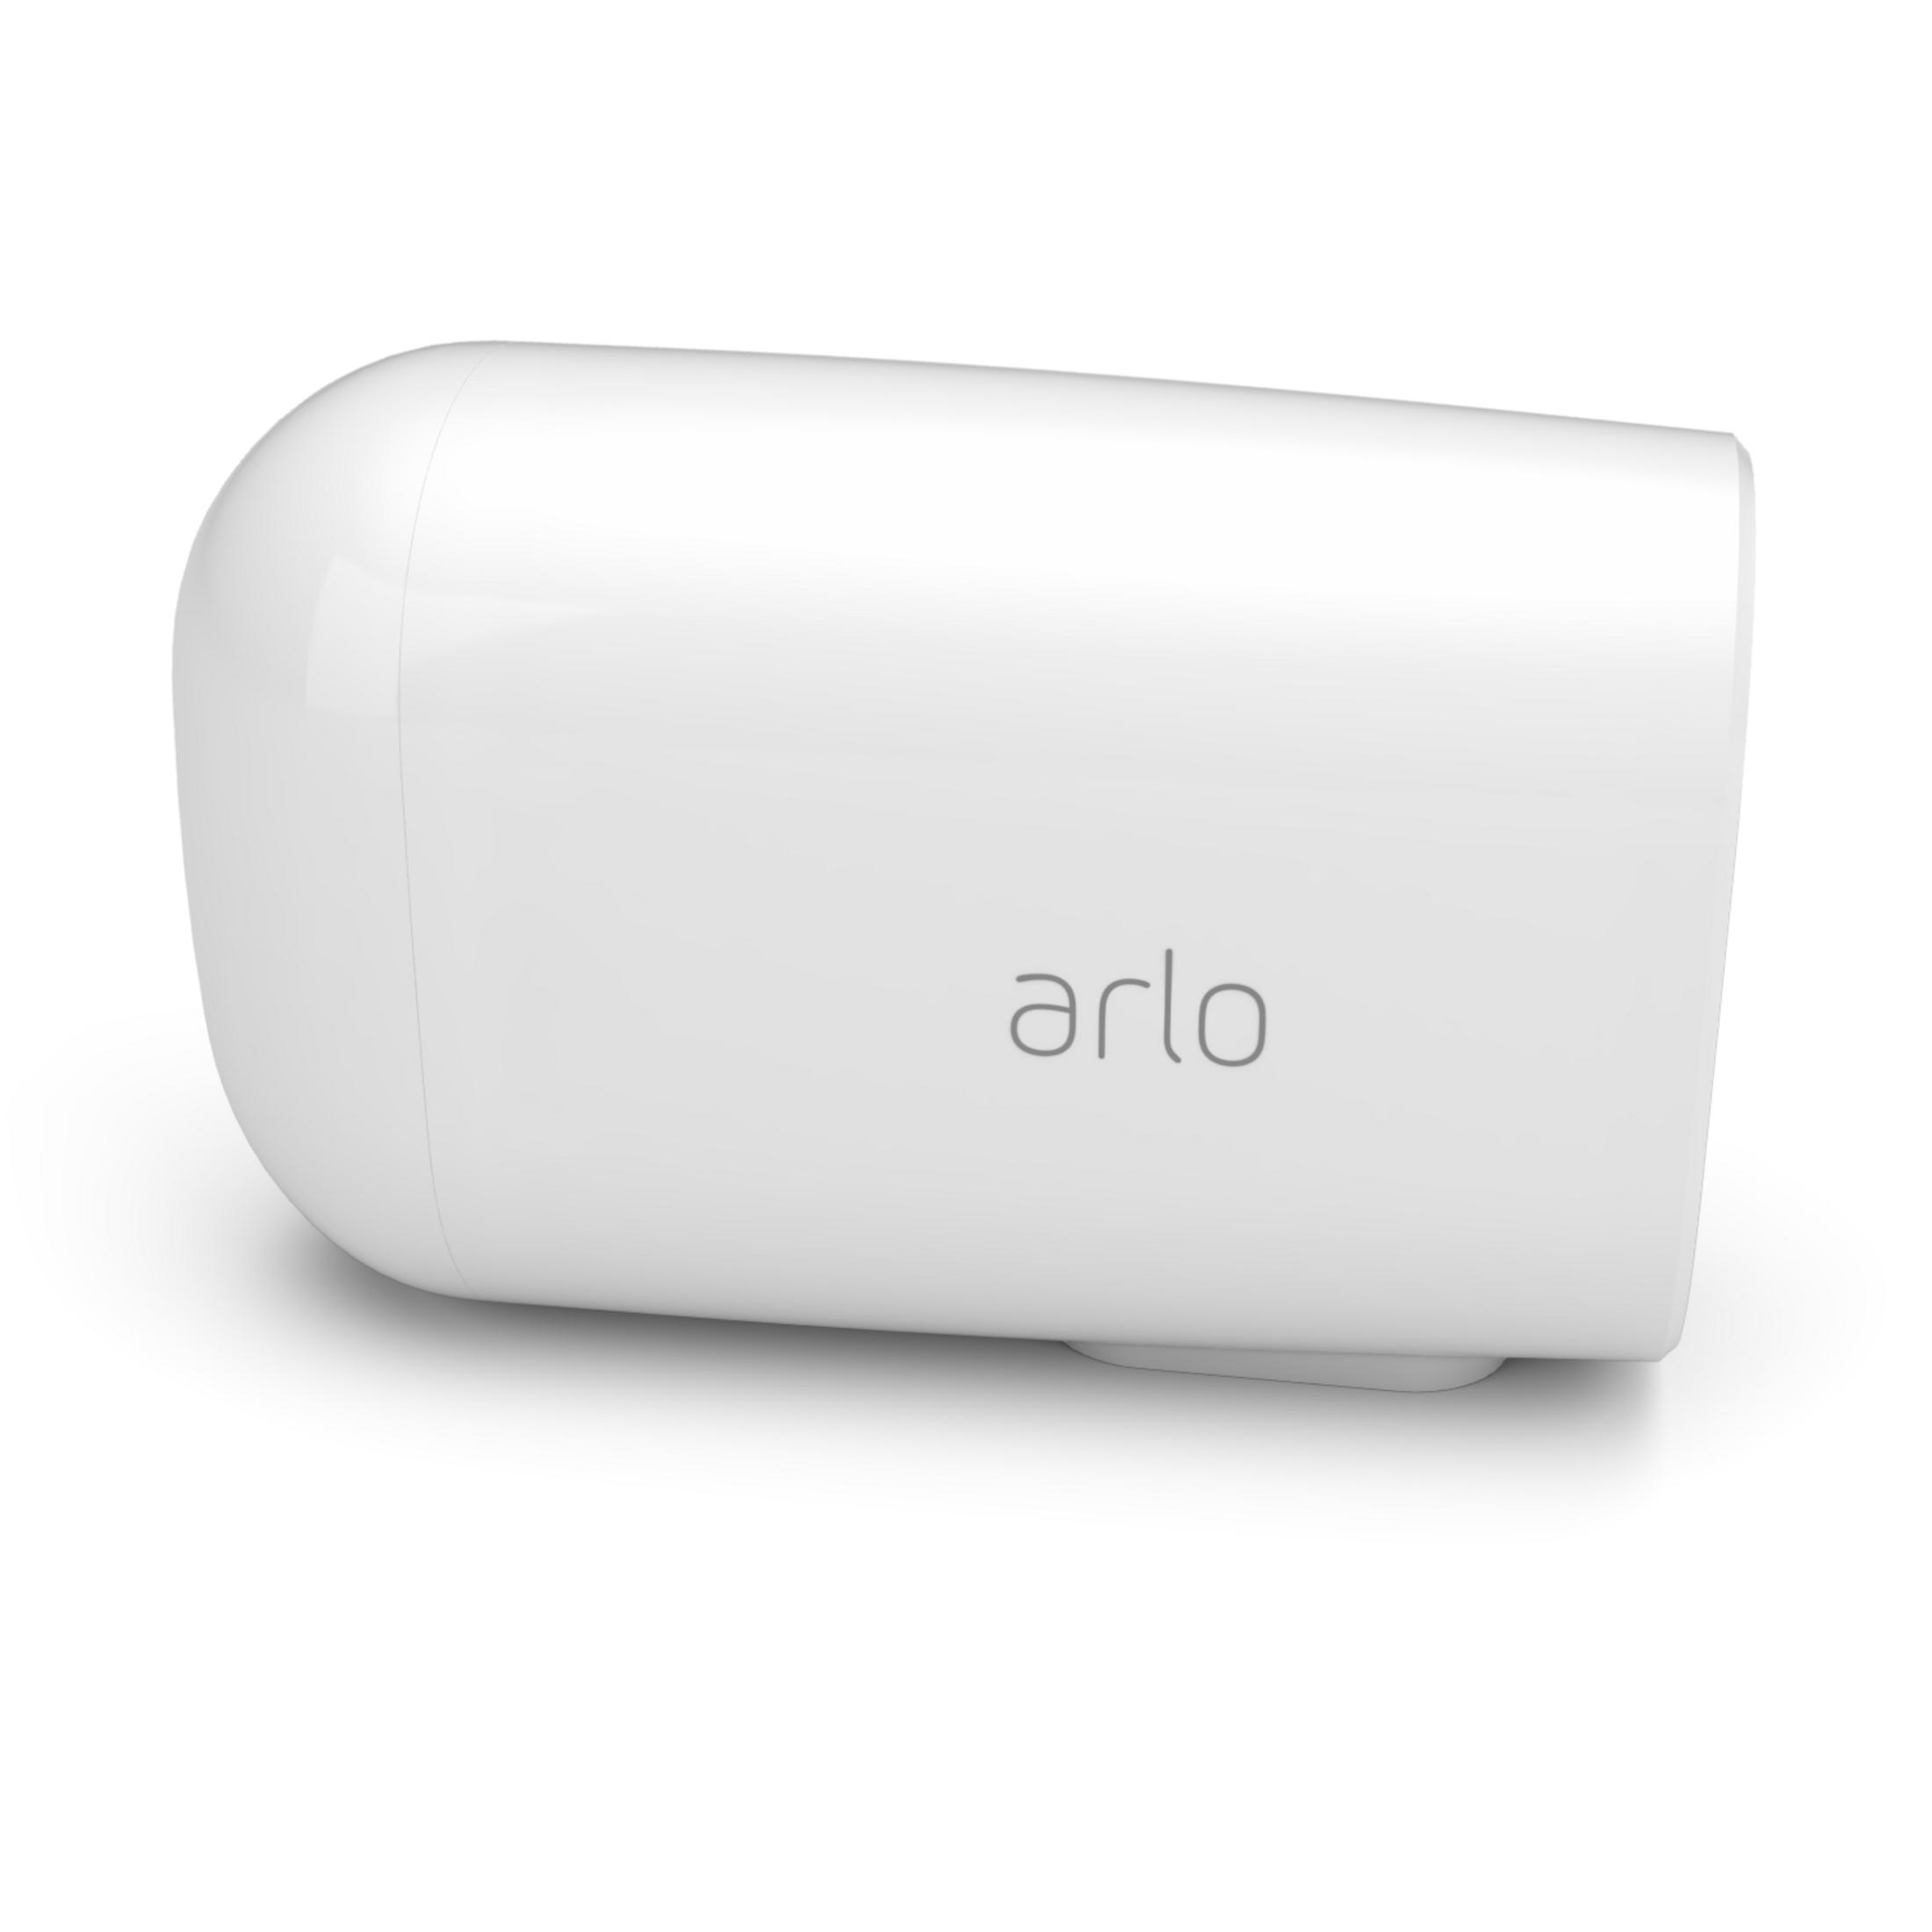 ARLO VMC2032-100EUS ESSENTIAL Auflösung Video: XL 1080p SPOTLIGHT Überwachungskamera, CAMERA